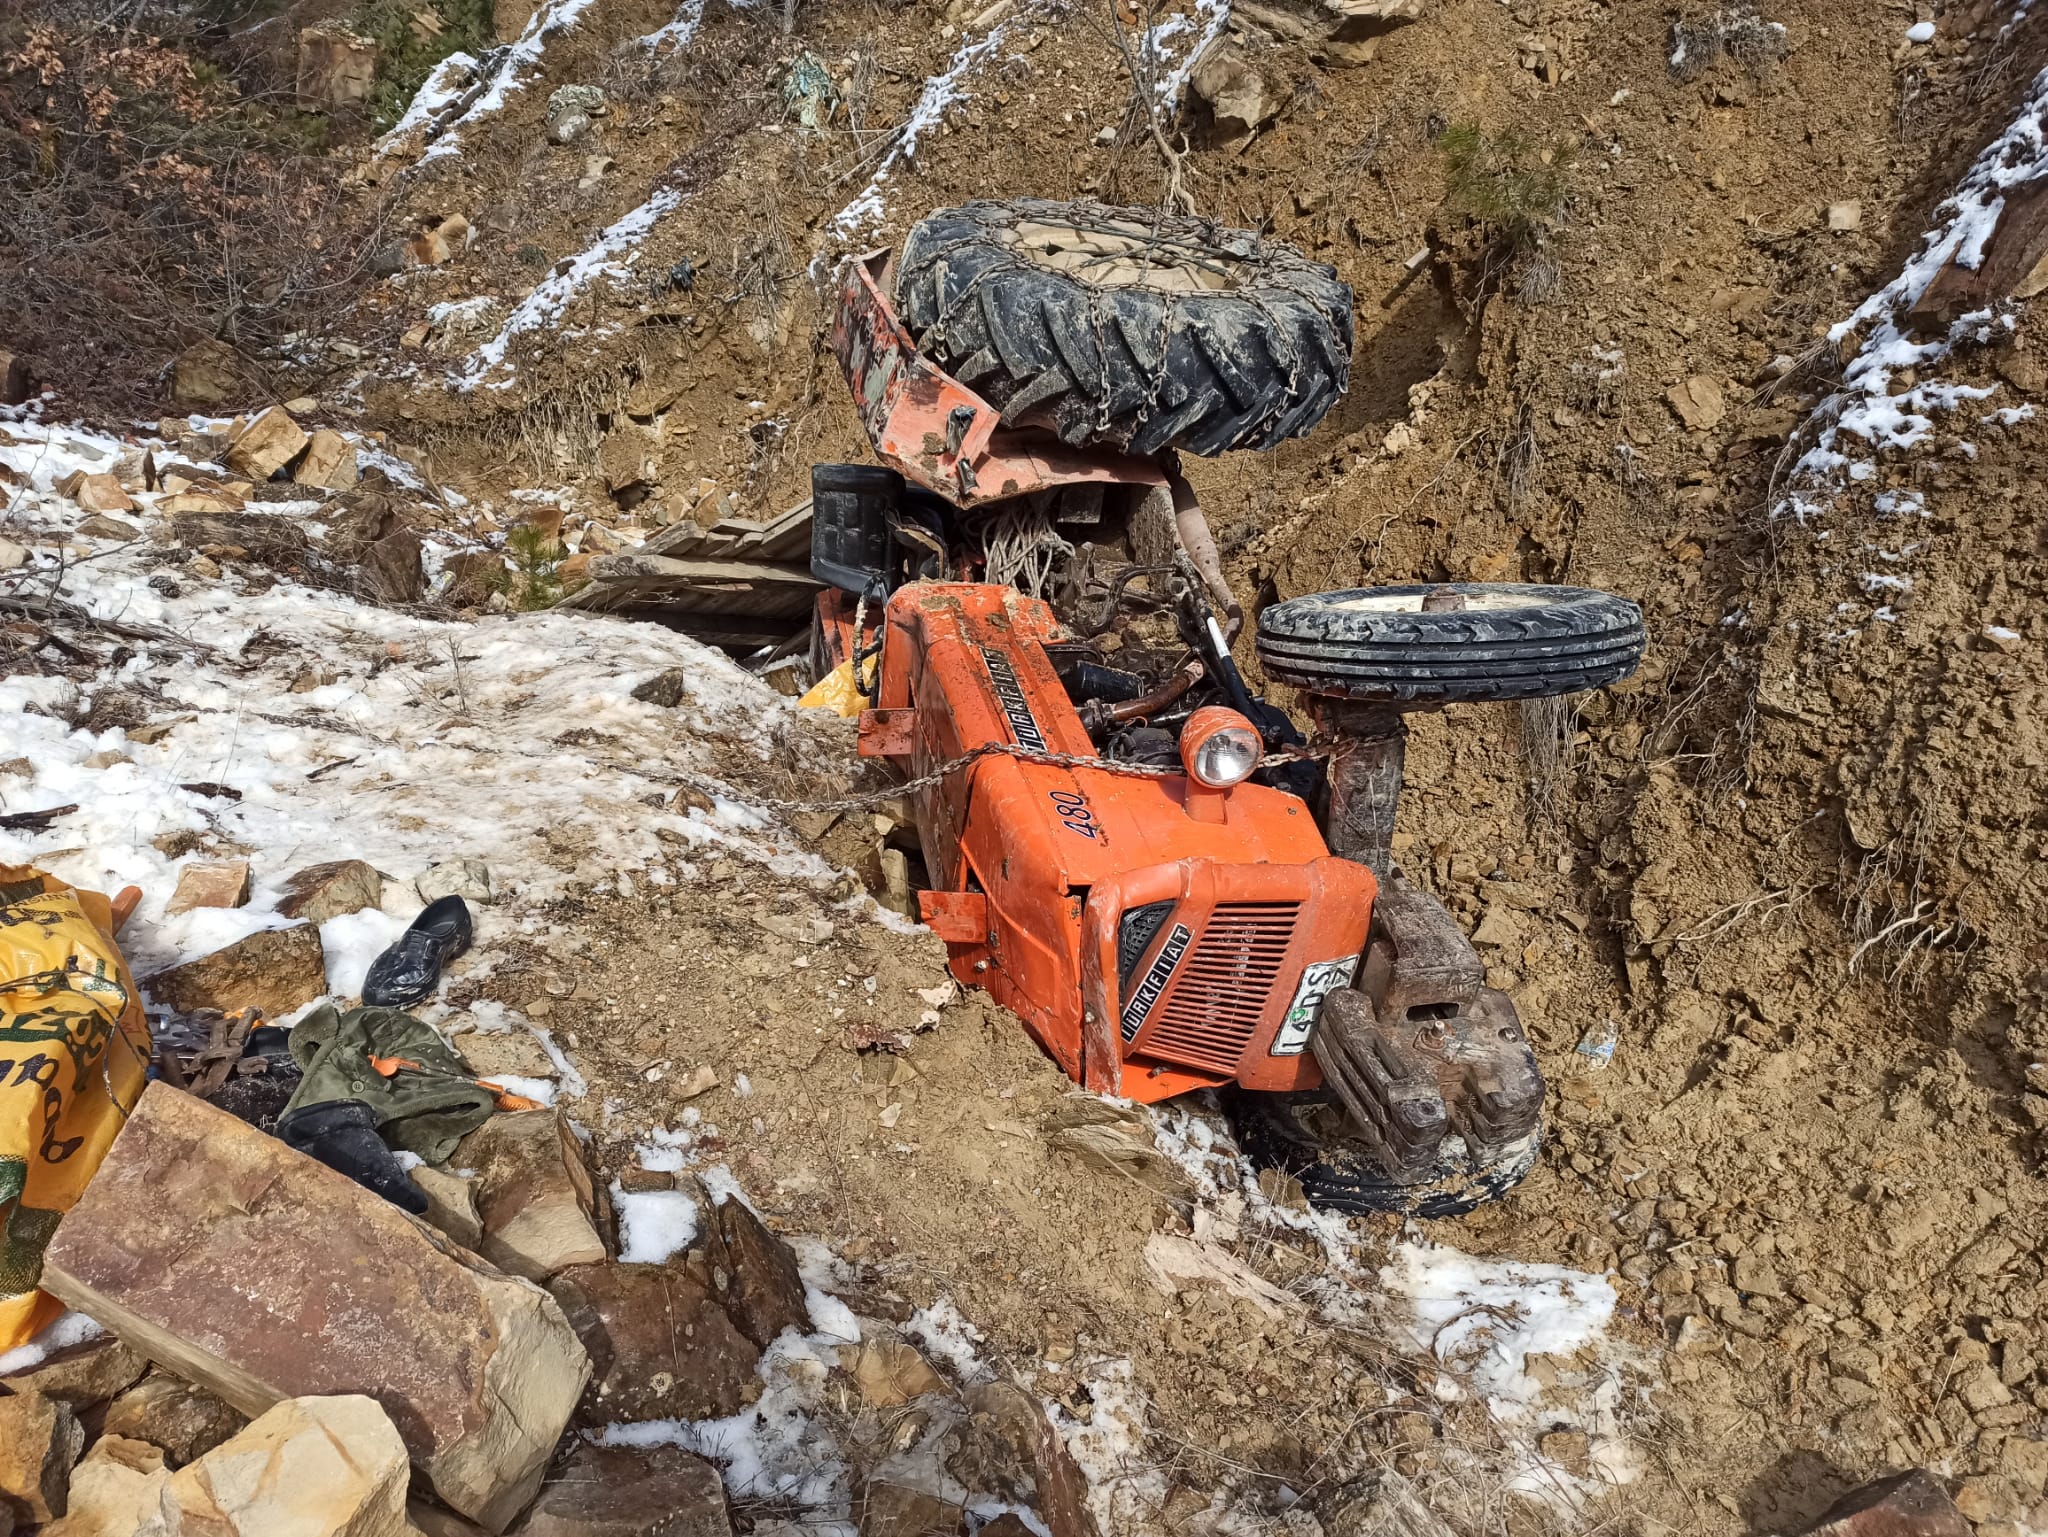 Bolu’da dere yatağına devrilen traktördeki 1 kişi öldü, 1 kişi yaralandı